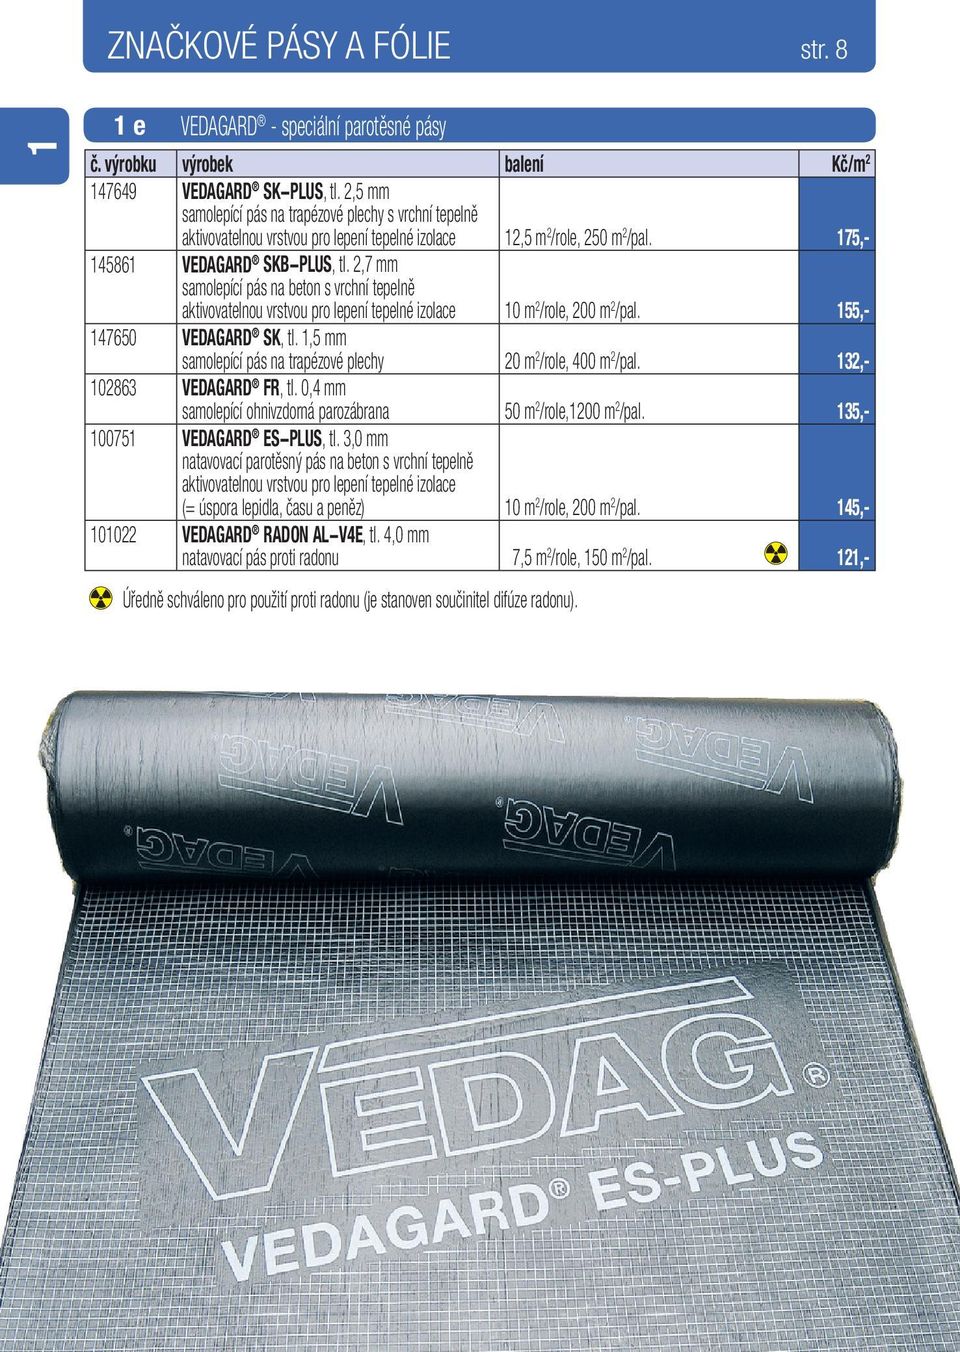 2,7 mm samolepící pás na beton s vrchní tepelně aktivovatelnou vrstvou pro lepení tepelné izolace 10 m 2 /role, 200 m 2 /pal. 155,- 147650 VEDAGARD SK, tl.